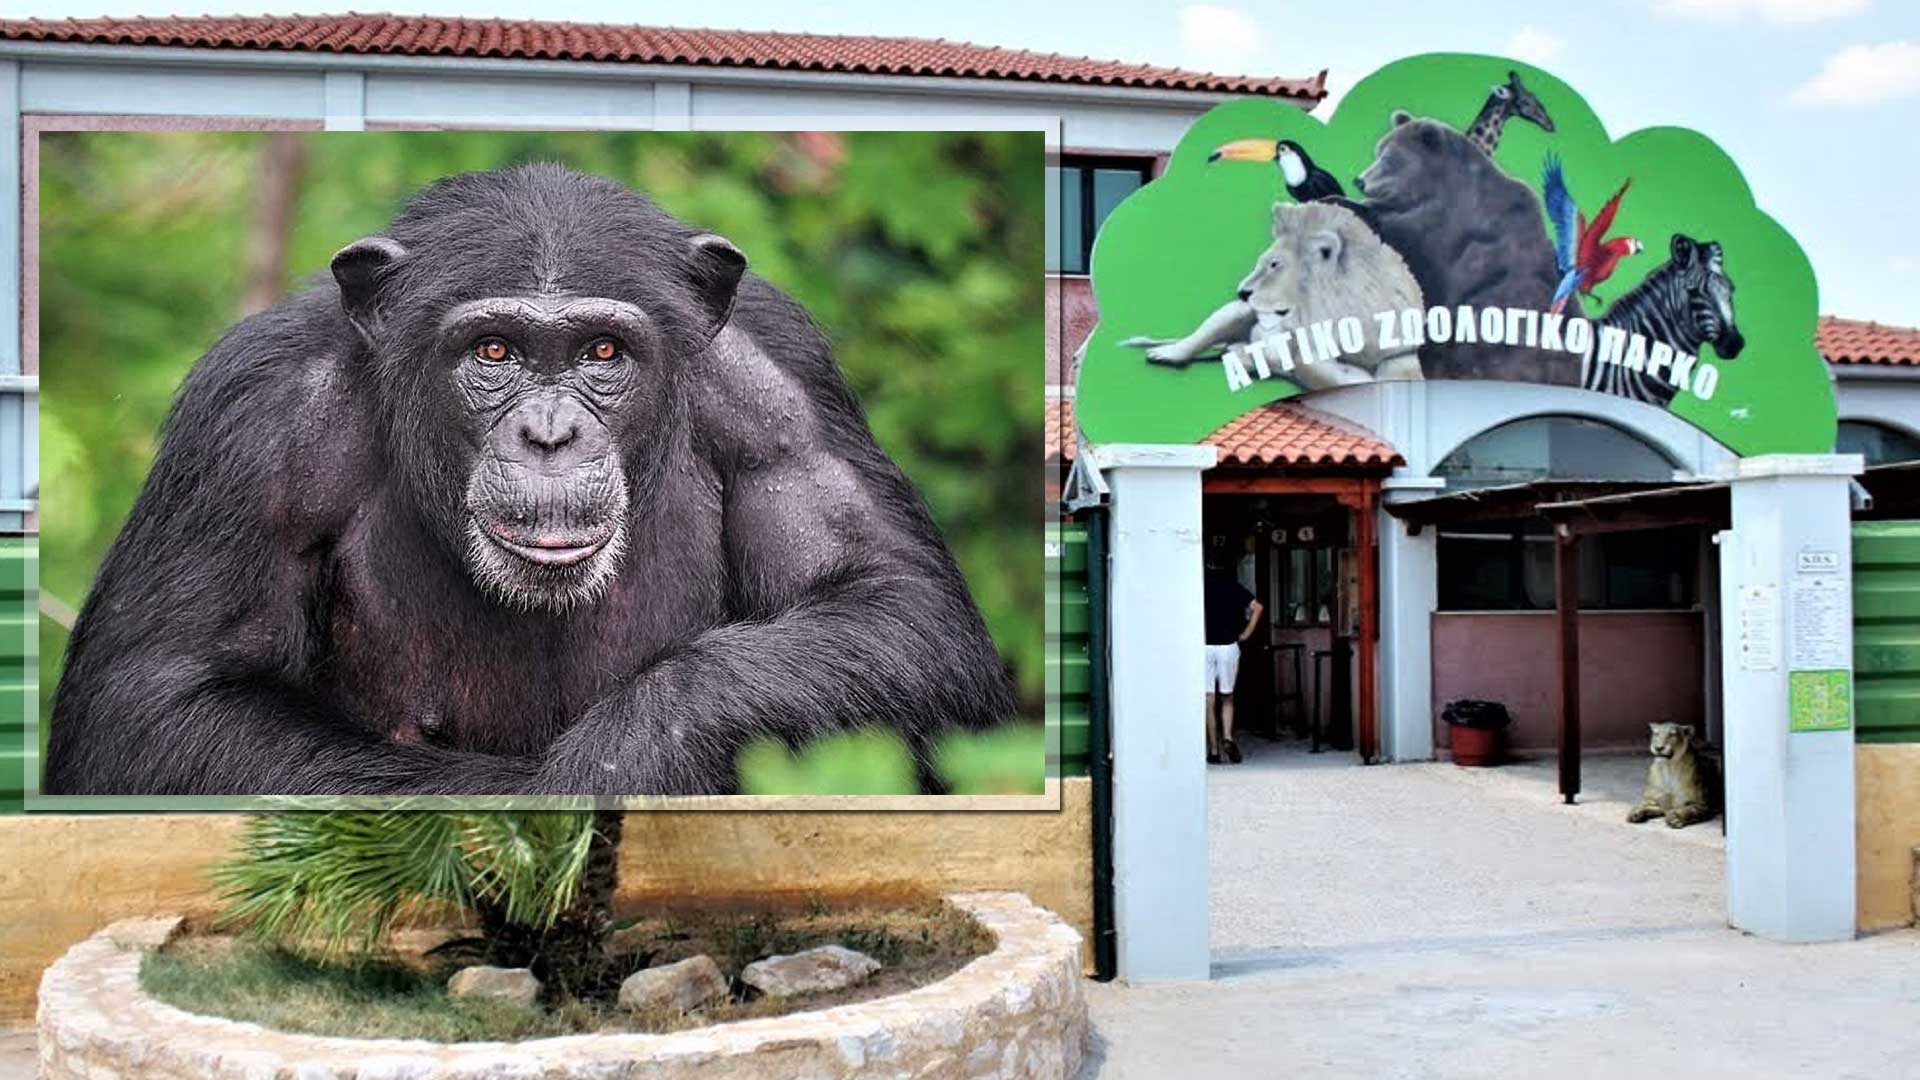 Αττικό Ζωολογικό: Σκότωσαν χιμπατζή που διέφυγε από το κλουβί του